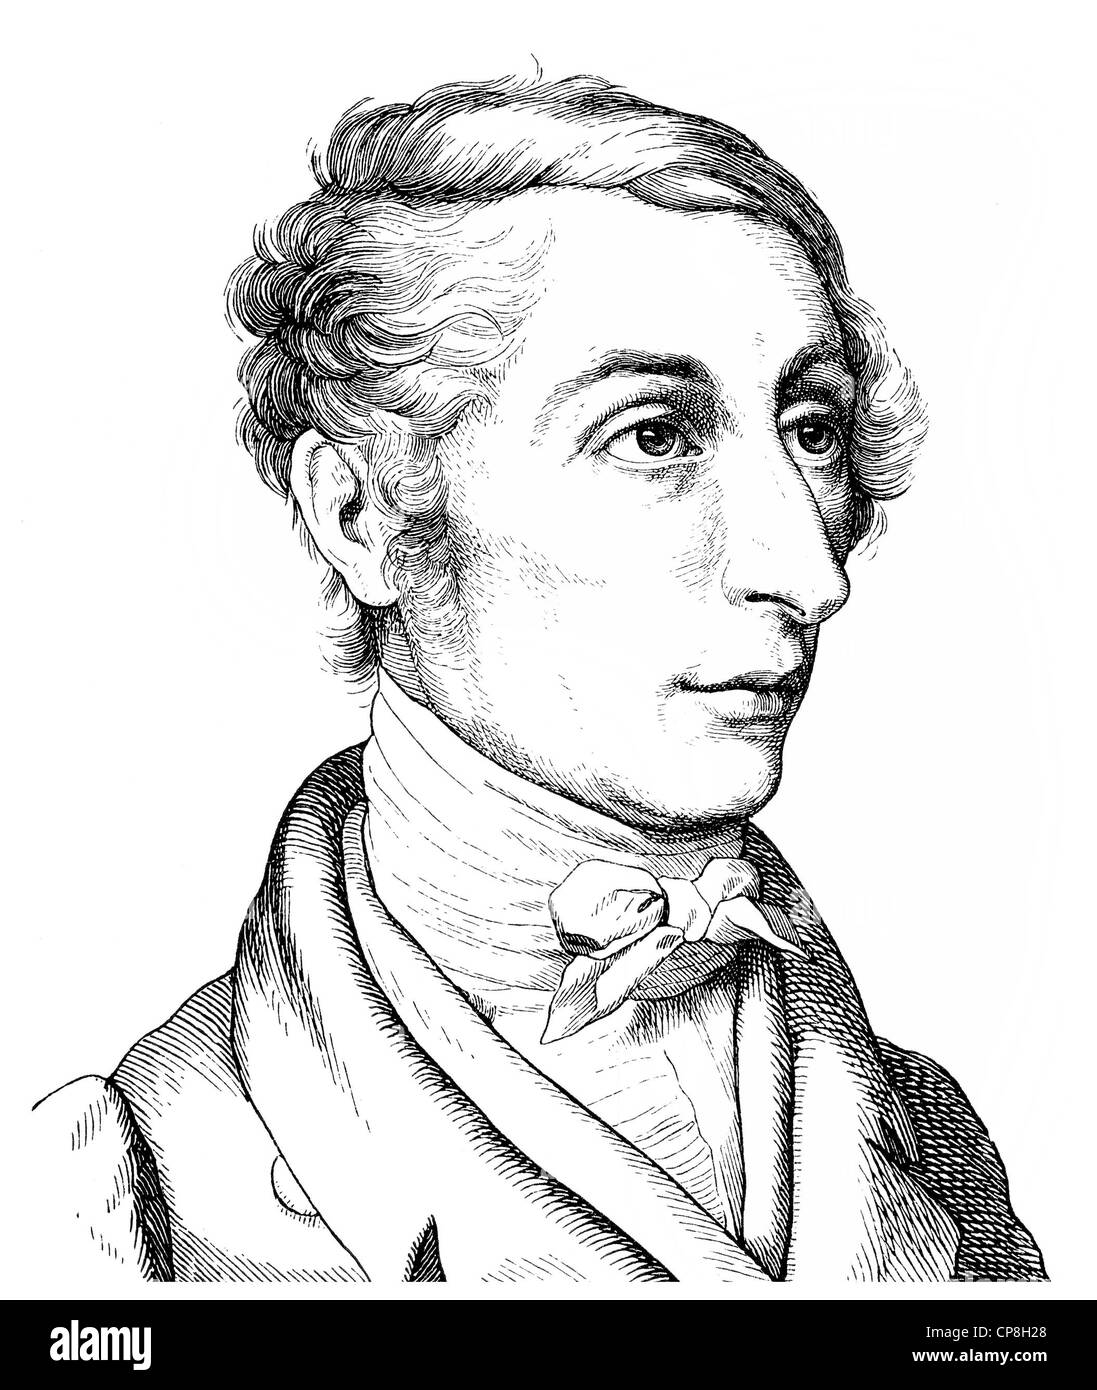 Carl Maria Friedrich Ernst von Weber, 1786 - 1826, a German composer, conductor and pianist, Historische Zeichnung aus dem 19. J Stock Photo